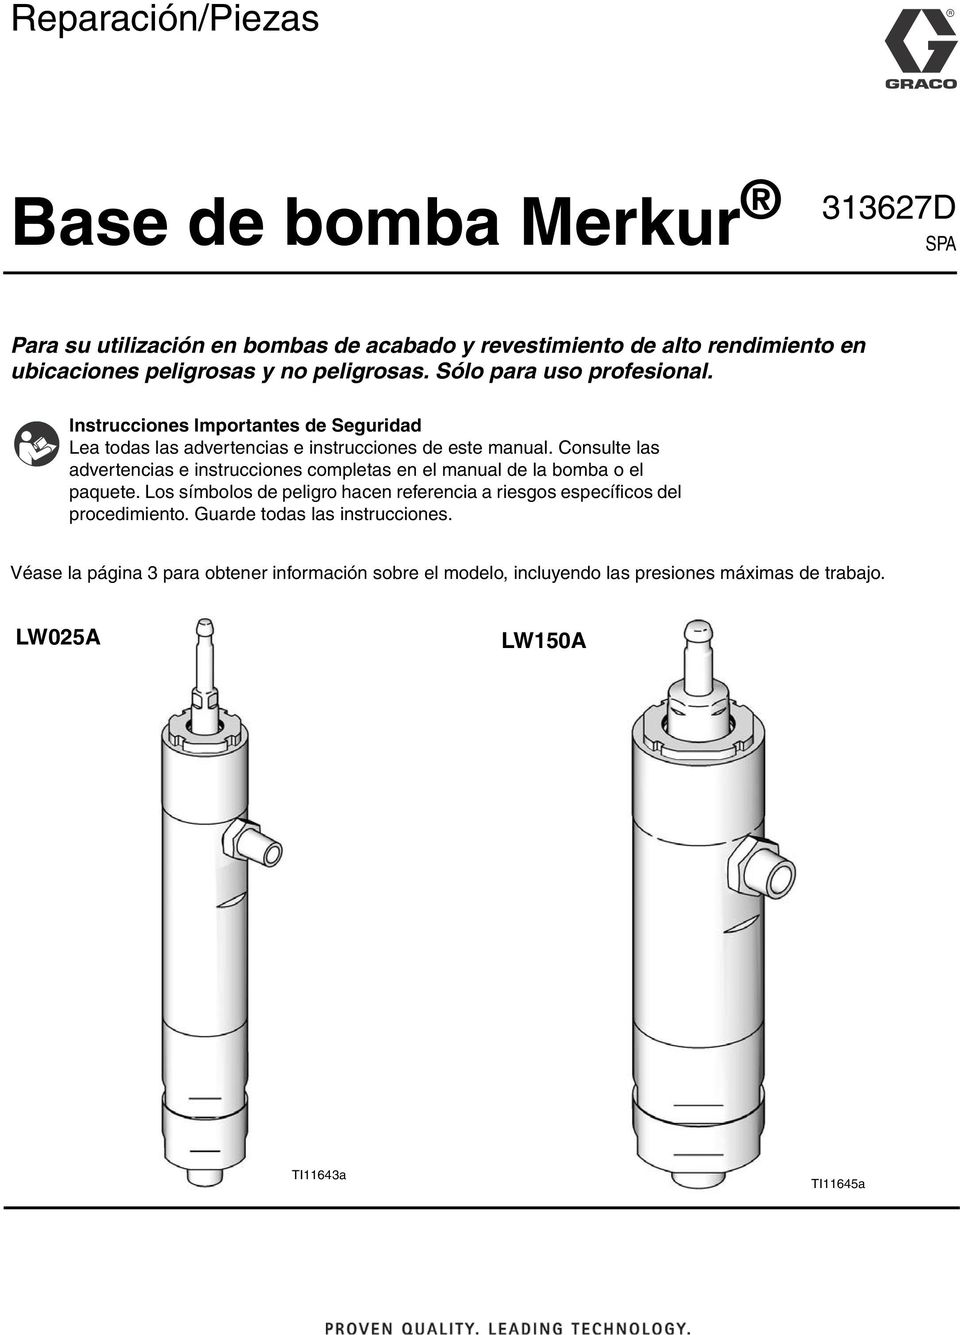 Consulte las advertencias e instrucciones completas en el manual de la bomba o el paquete.